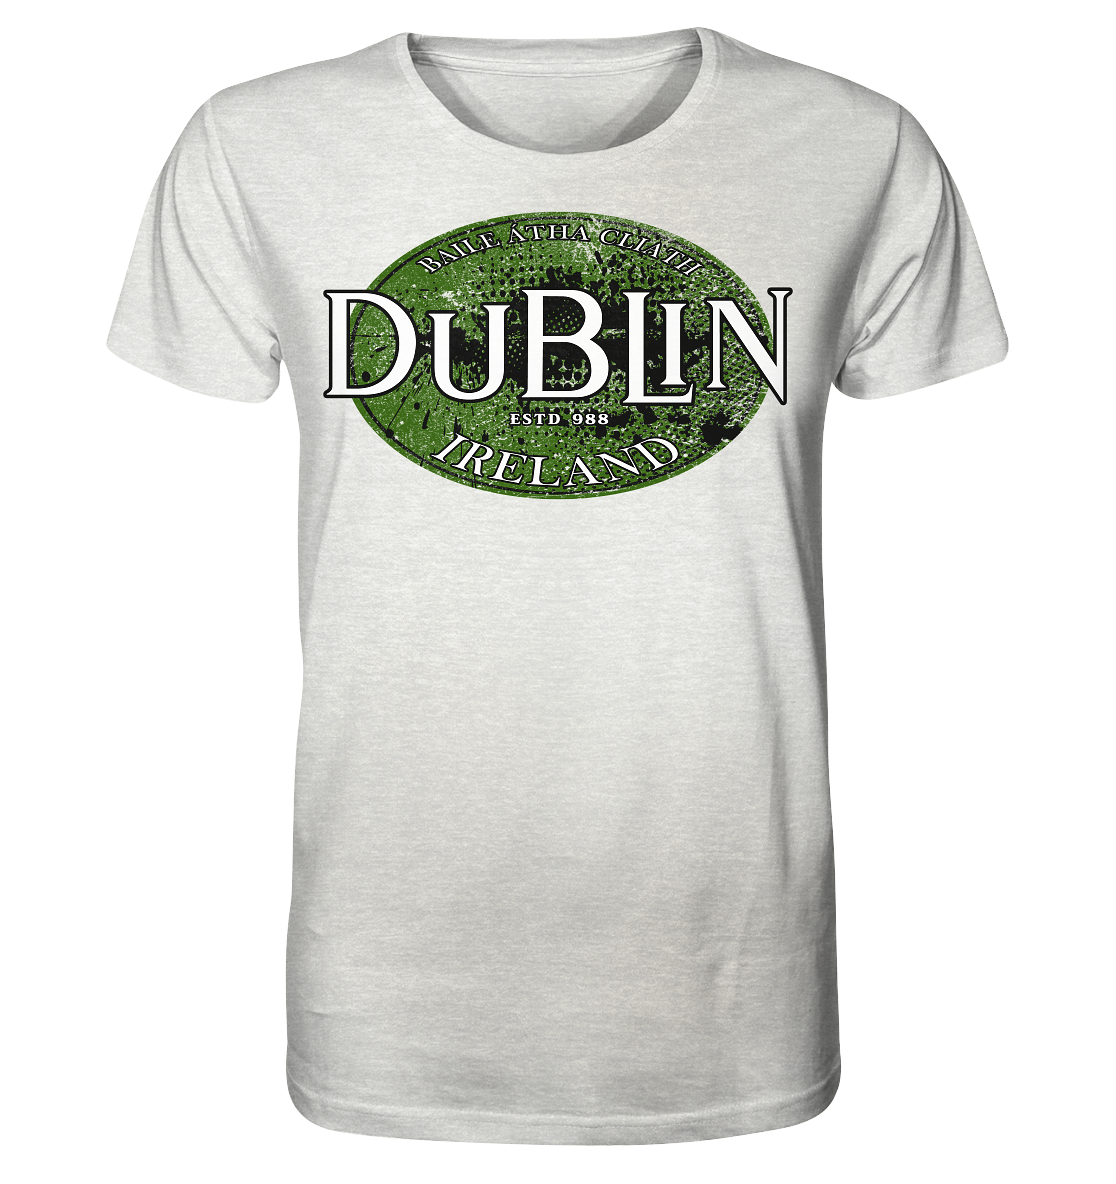 Dublin "Ireland / Baile Átha Cliath / Estd 988" - Organic Shirt (meliert)